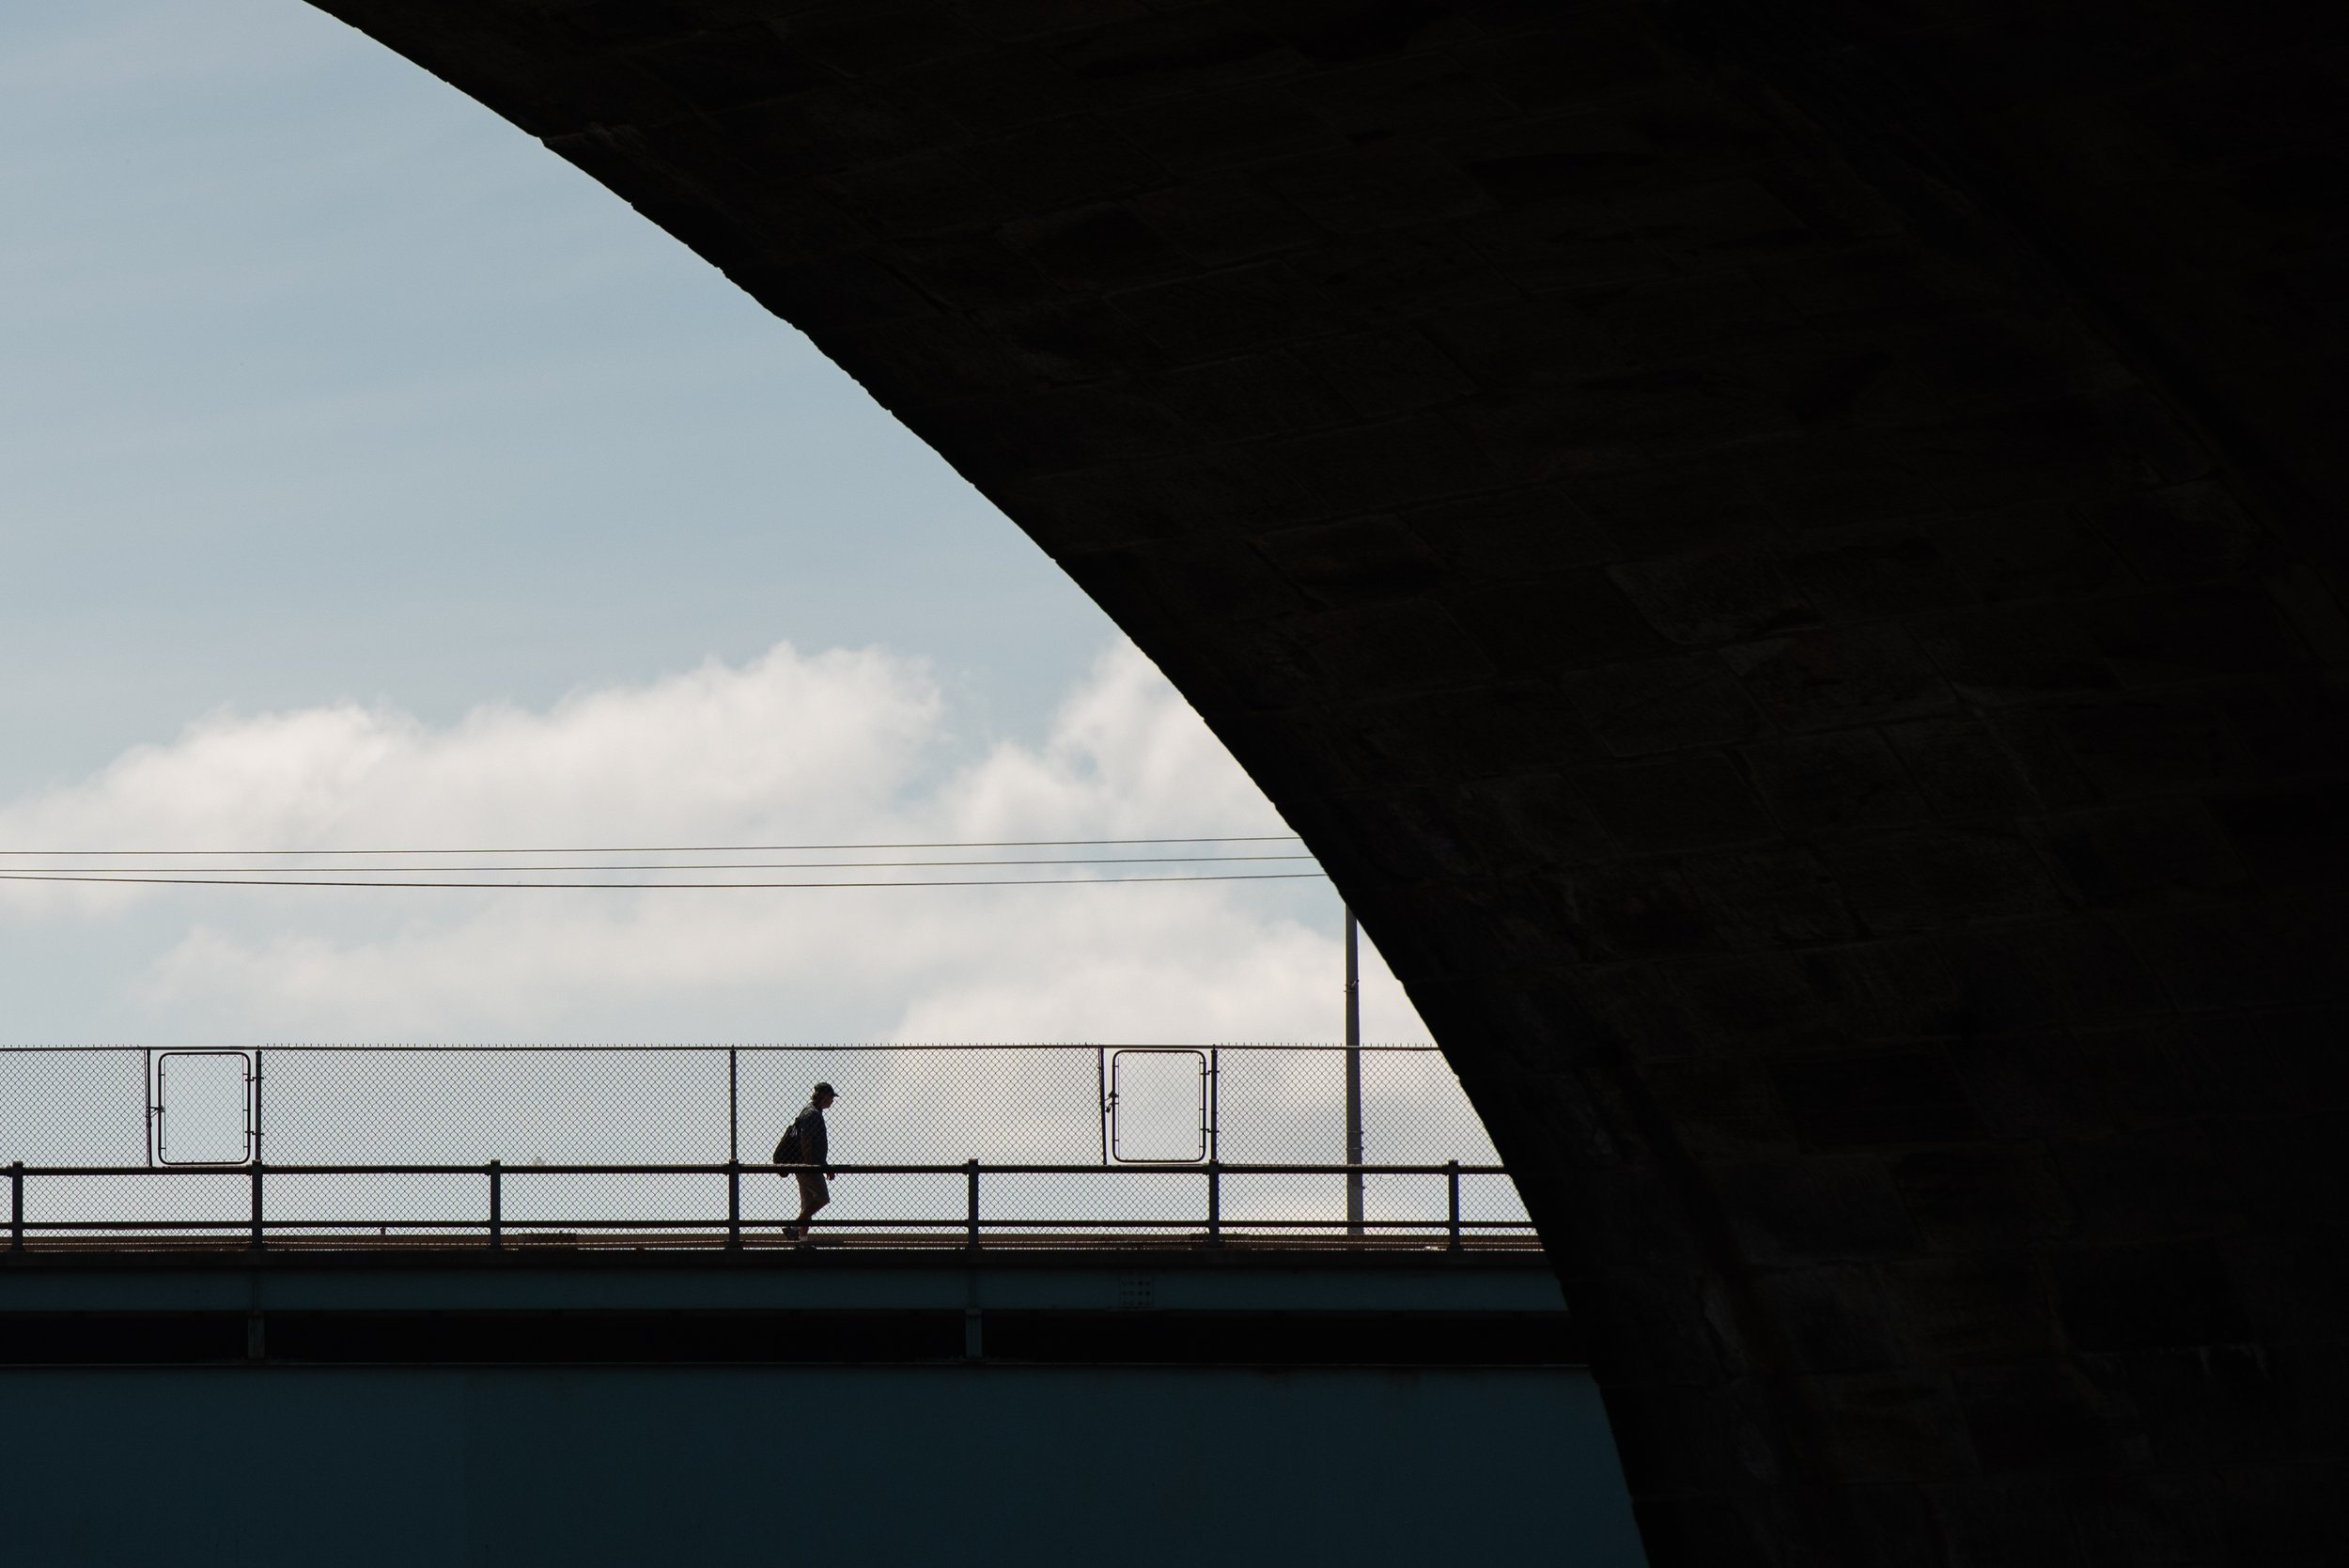   A person walks across the Girard Avenue Bridge above the Schuylkill River on Saturday, Sept. 10, 2022.   